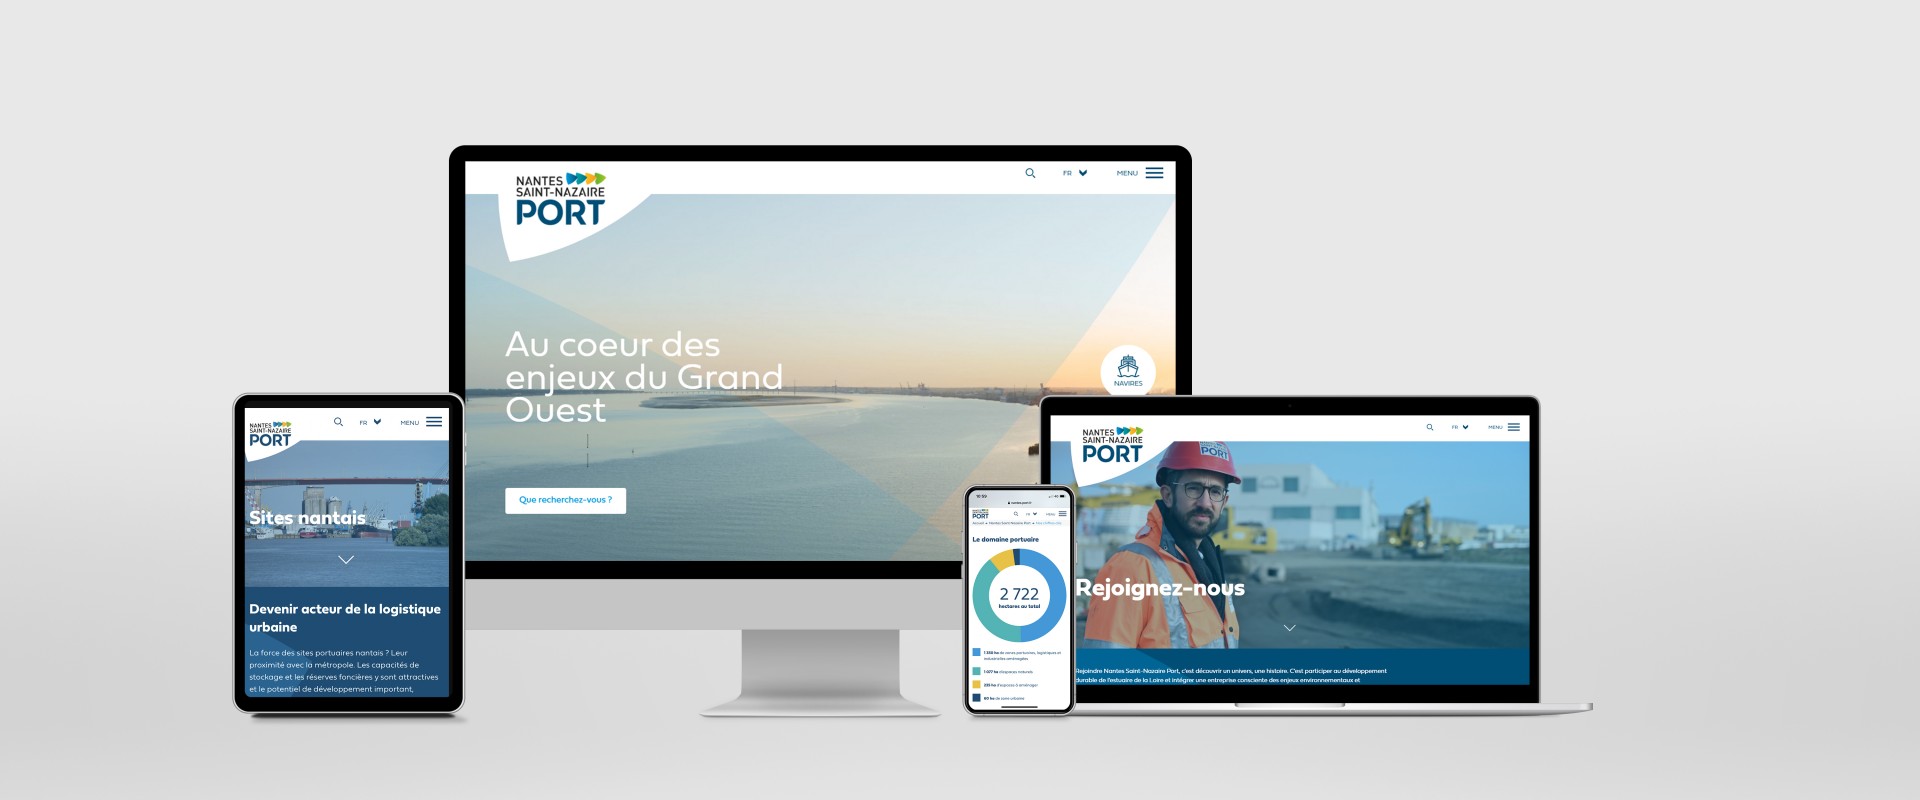 El sitio web de Nantes Saint-Nazaire Port estrena nuevo diseño